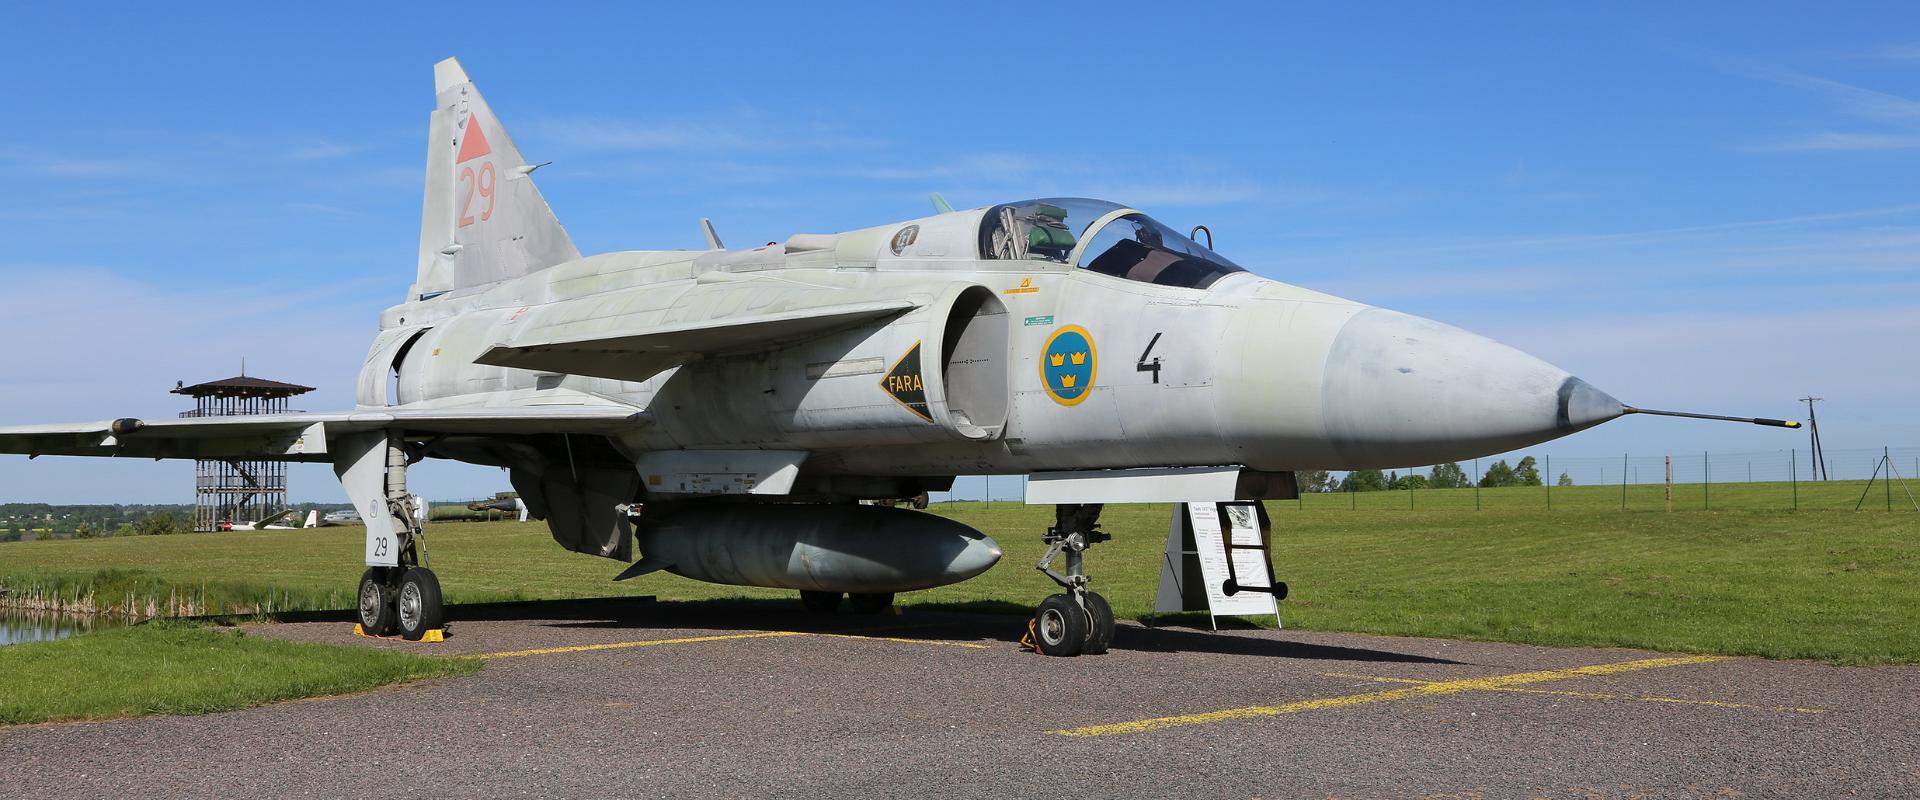 Viron ilmailumuseo